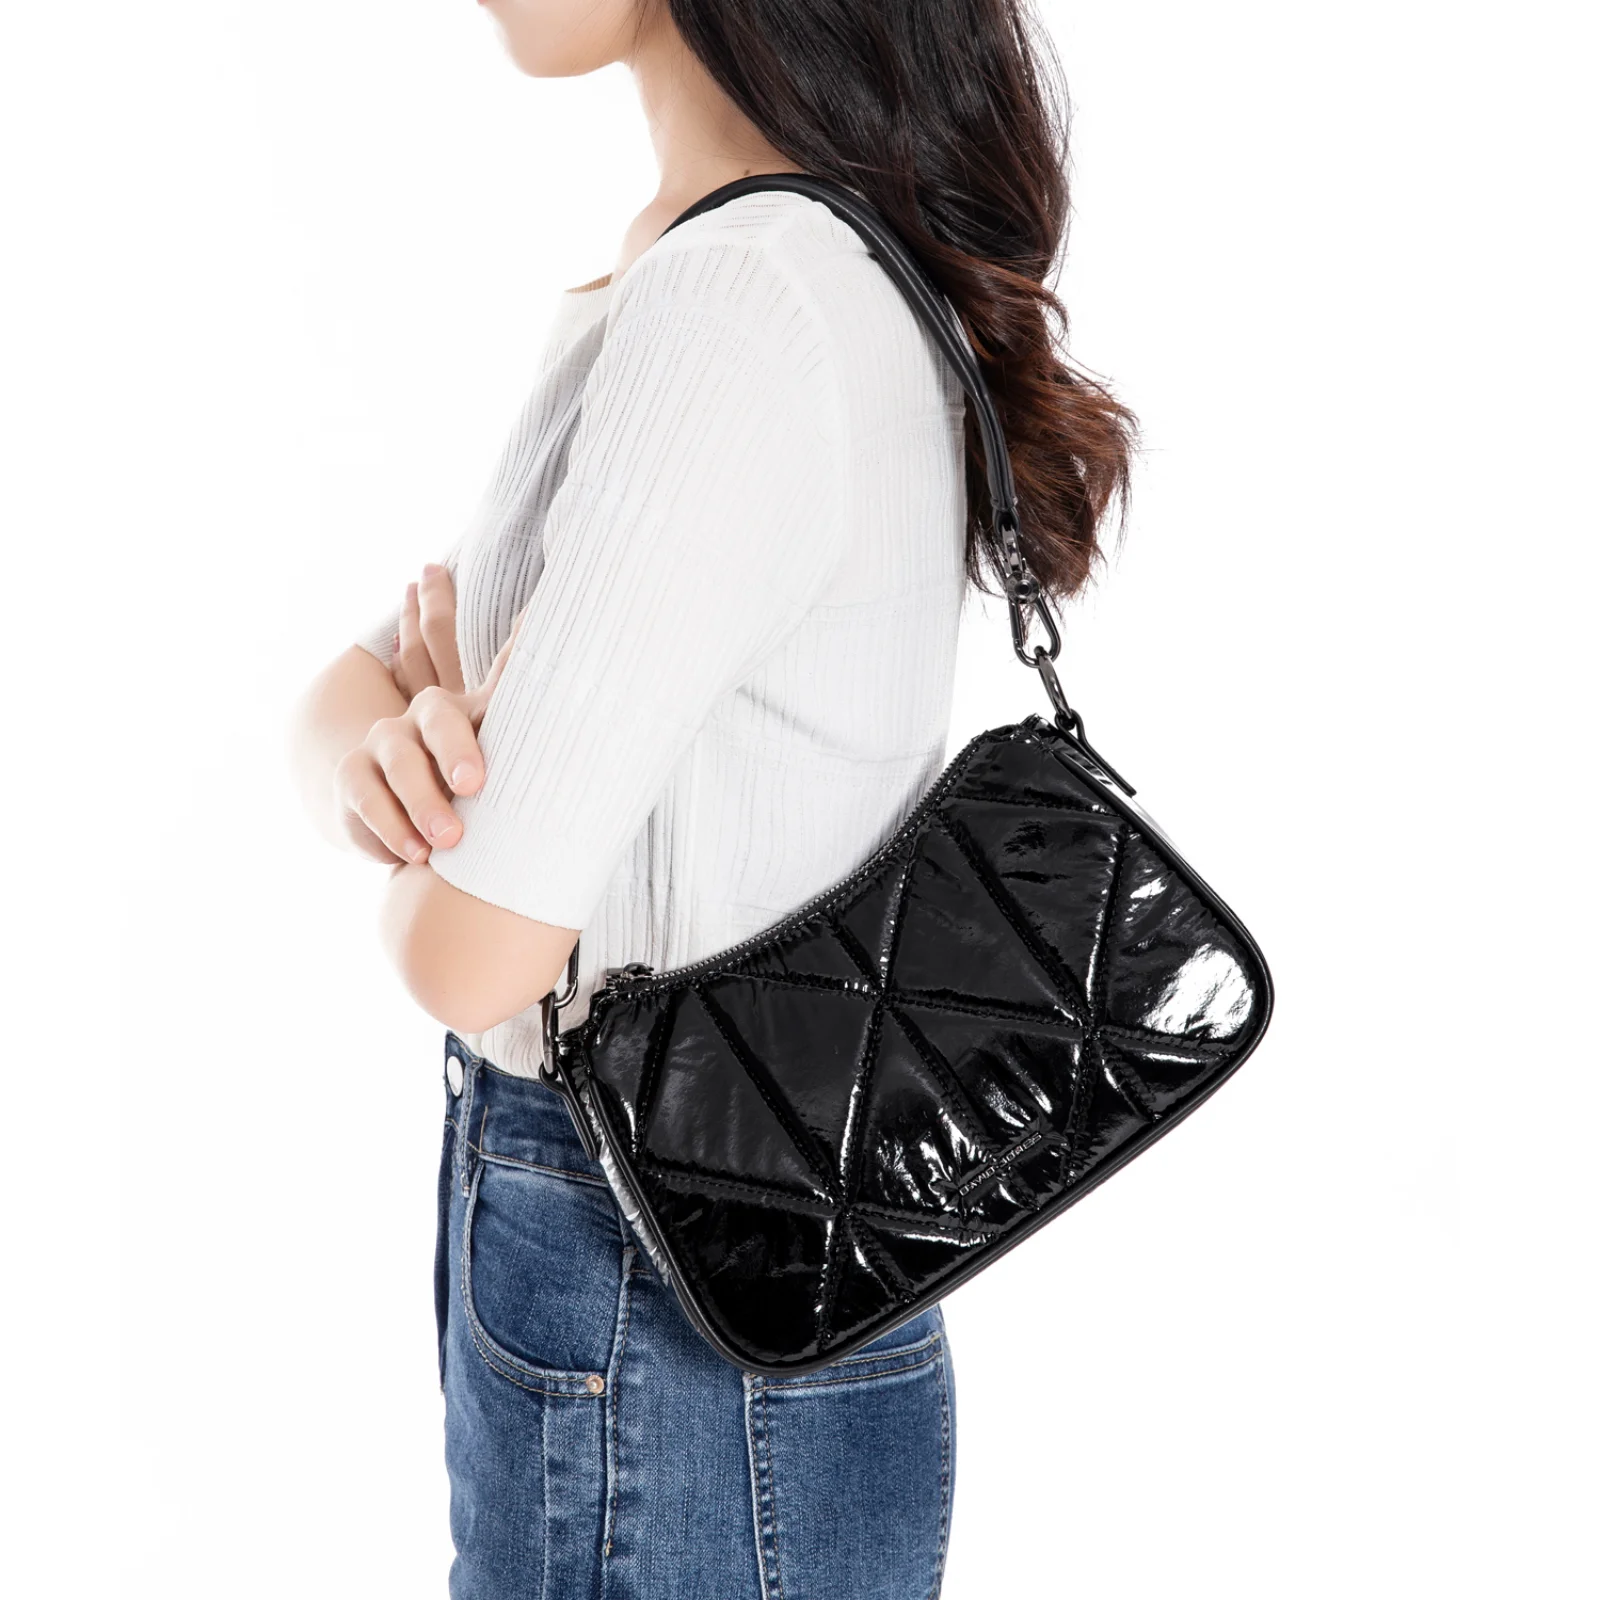 

David Jones Fashion Exquisite Women's Shoulder Bag Independent Minority Design Shiny Daily Commuter Solid Color Shoulder Bag